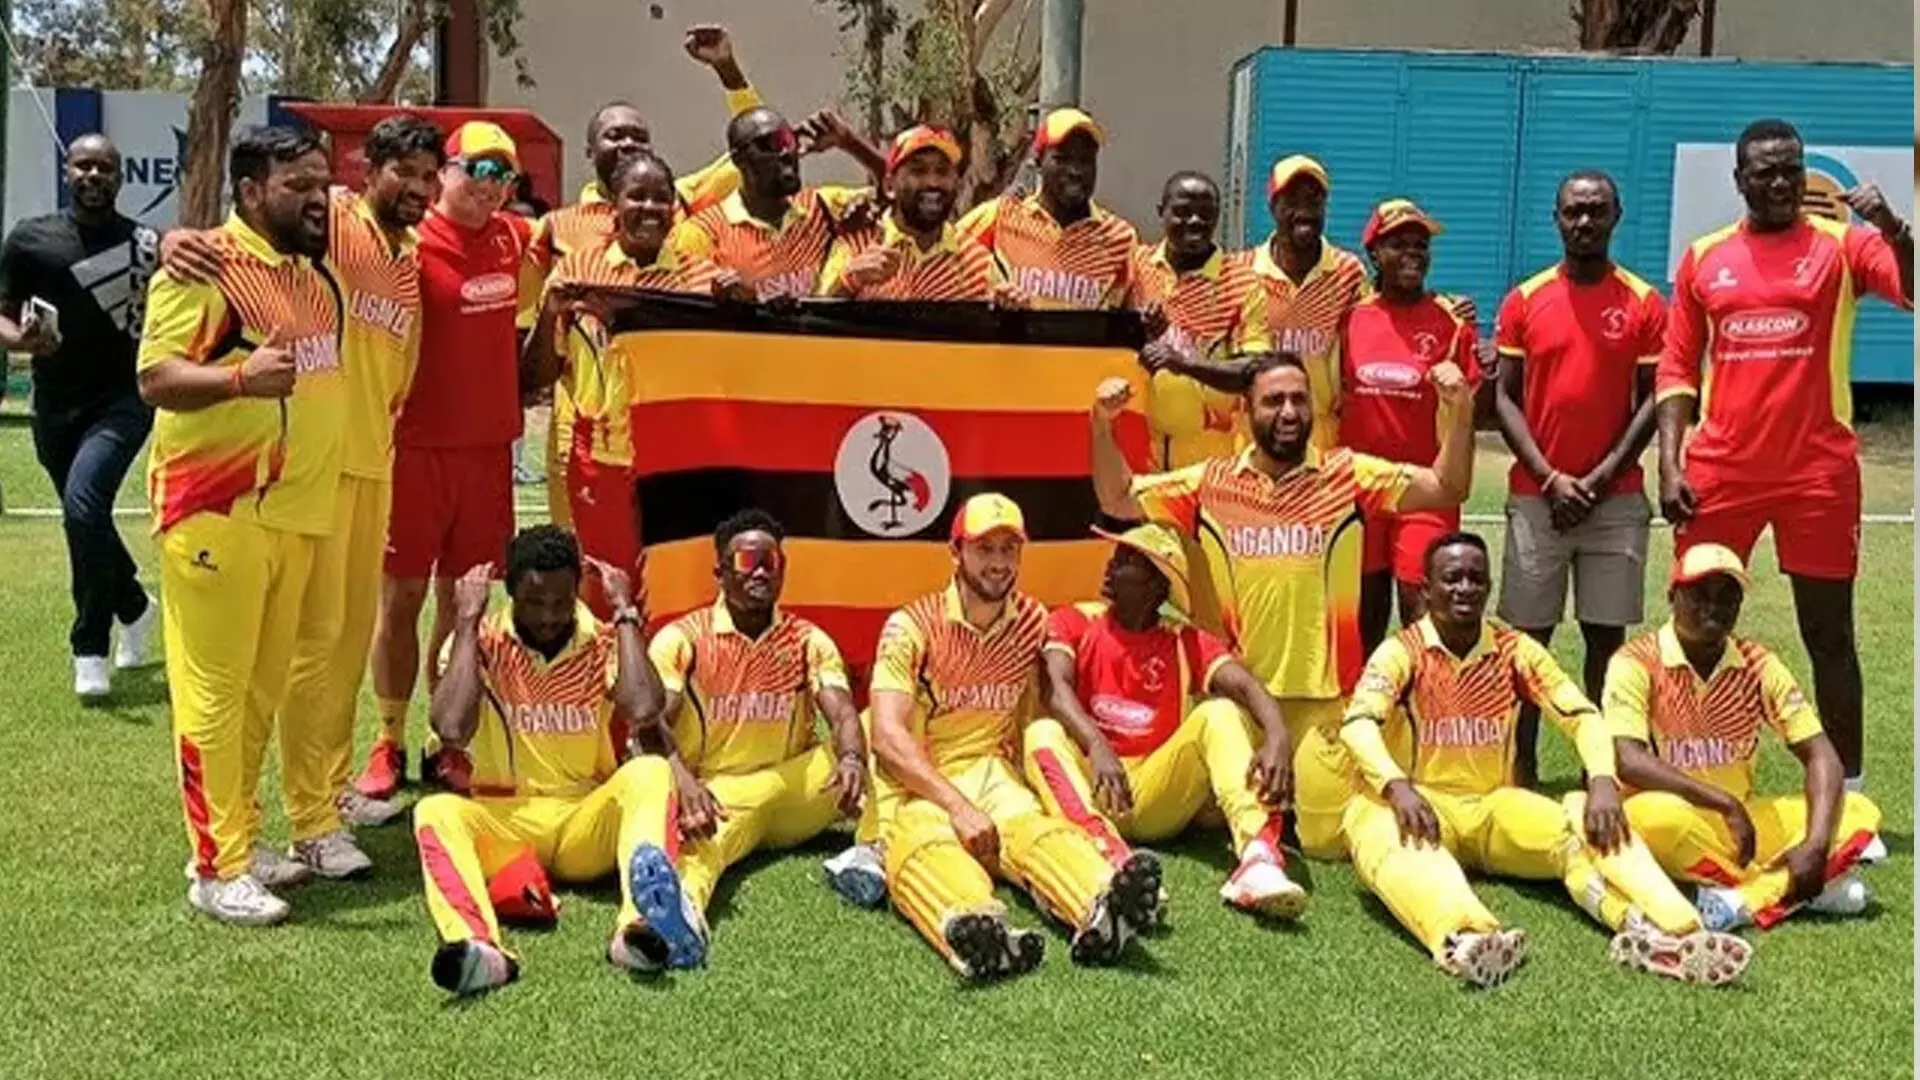 युगांडा क्रिकेट एसोसिएशन टी20 विश्व कप के लिए टीम की घोषणा की